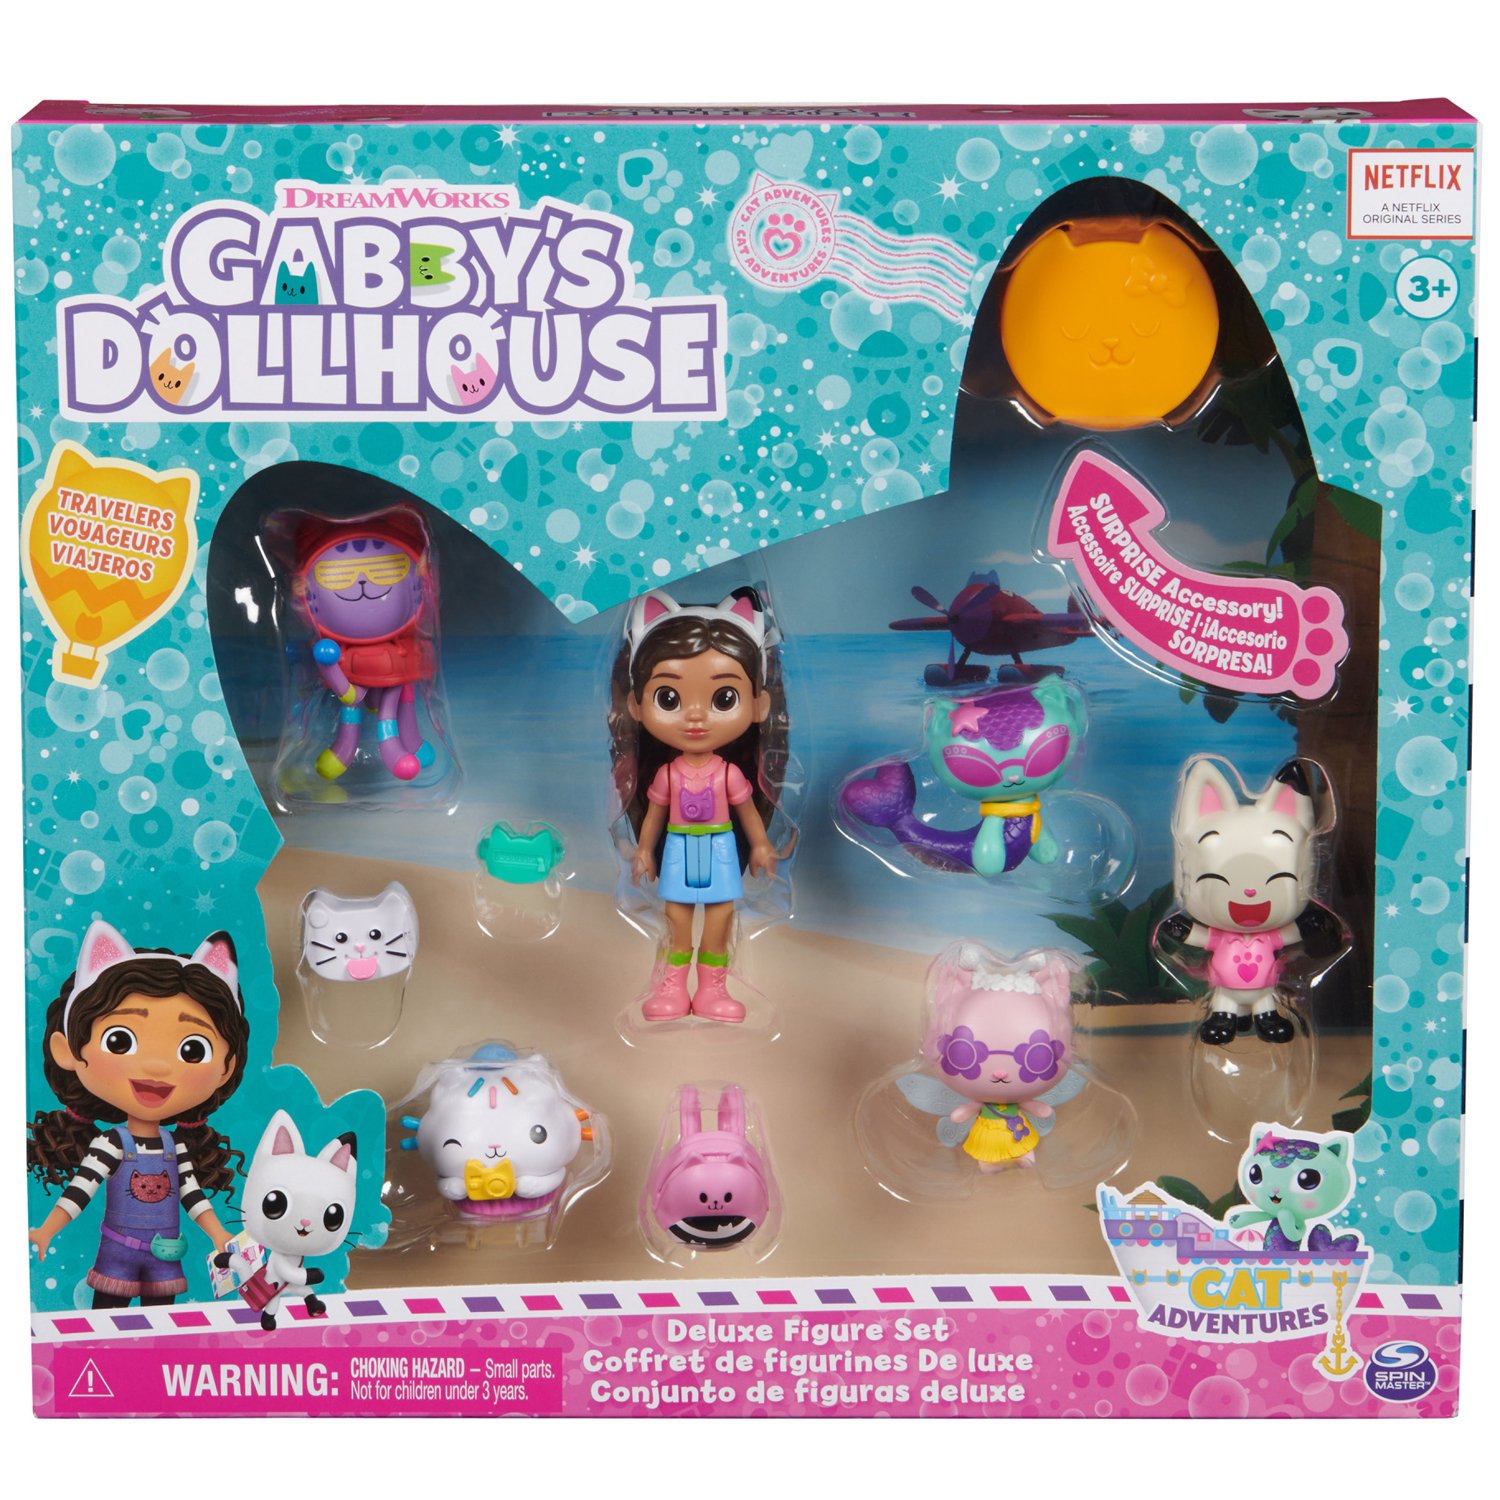 Gabbys Dollhouse Deluxe Gift Pack - Travelers